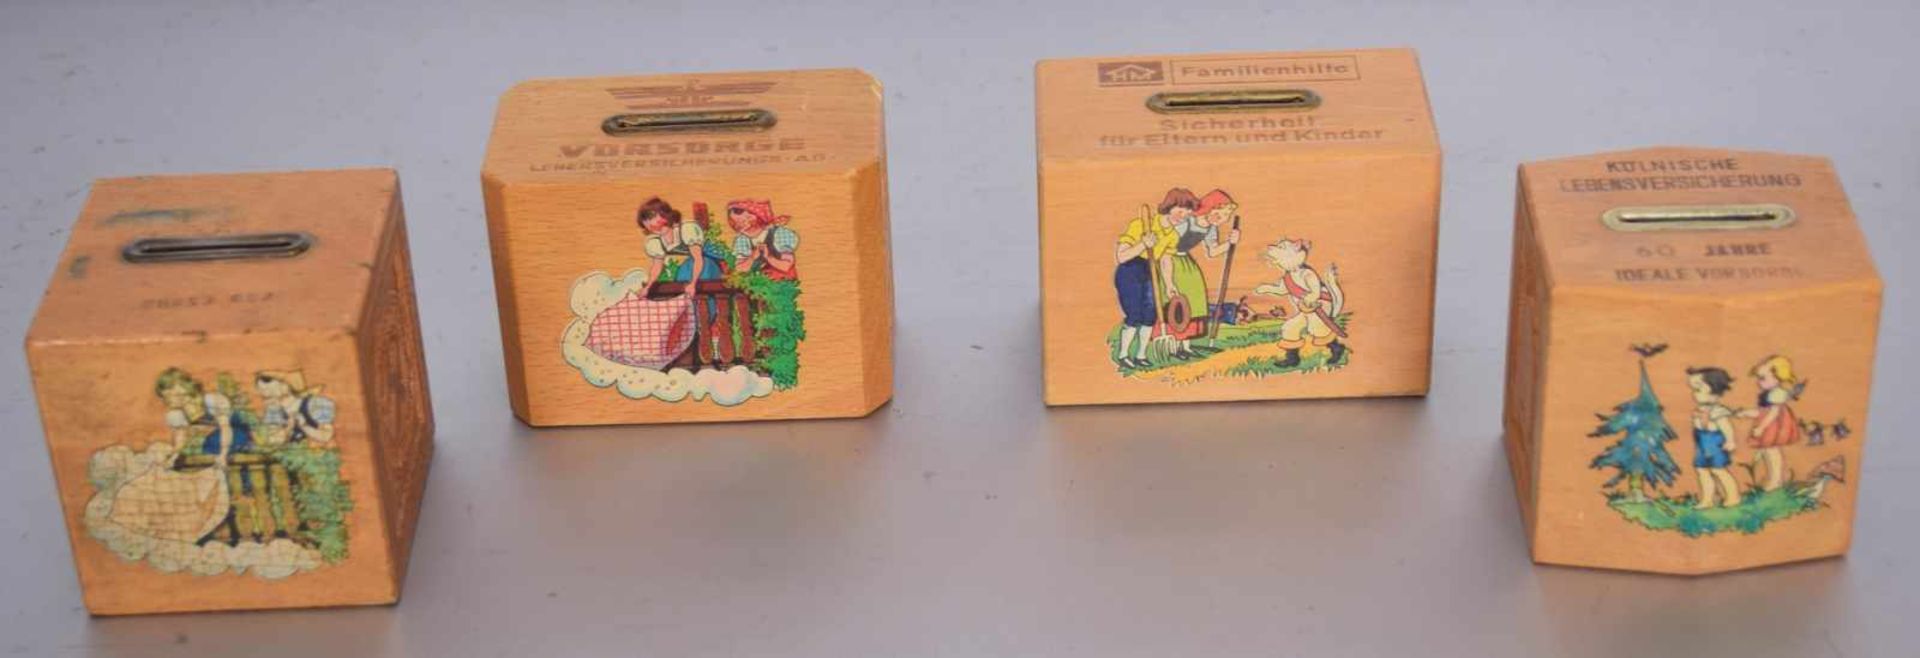 Konvolut vier SpardosenHolz, mit Märchenfiguren verziert, ca. 7 X 7 cm, 50er/60er Jahre